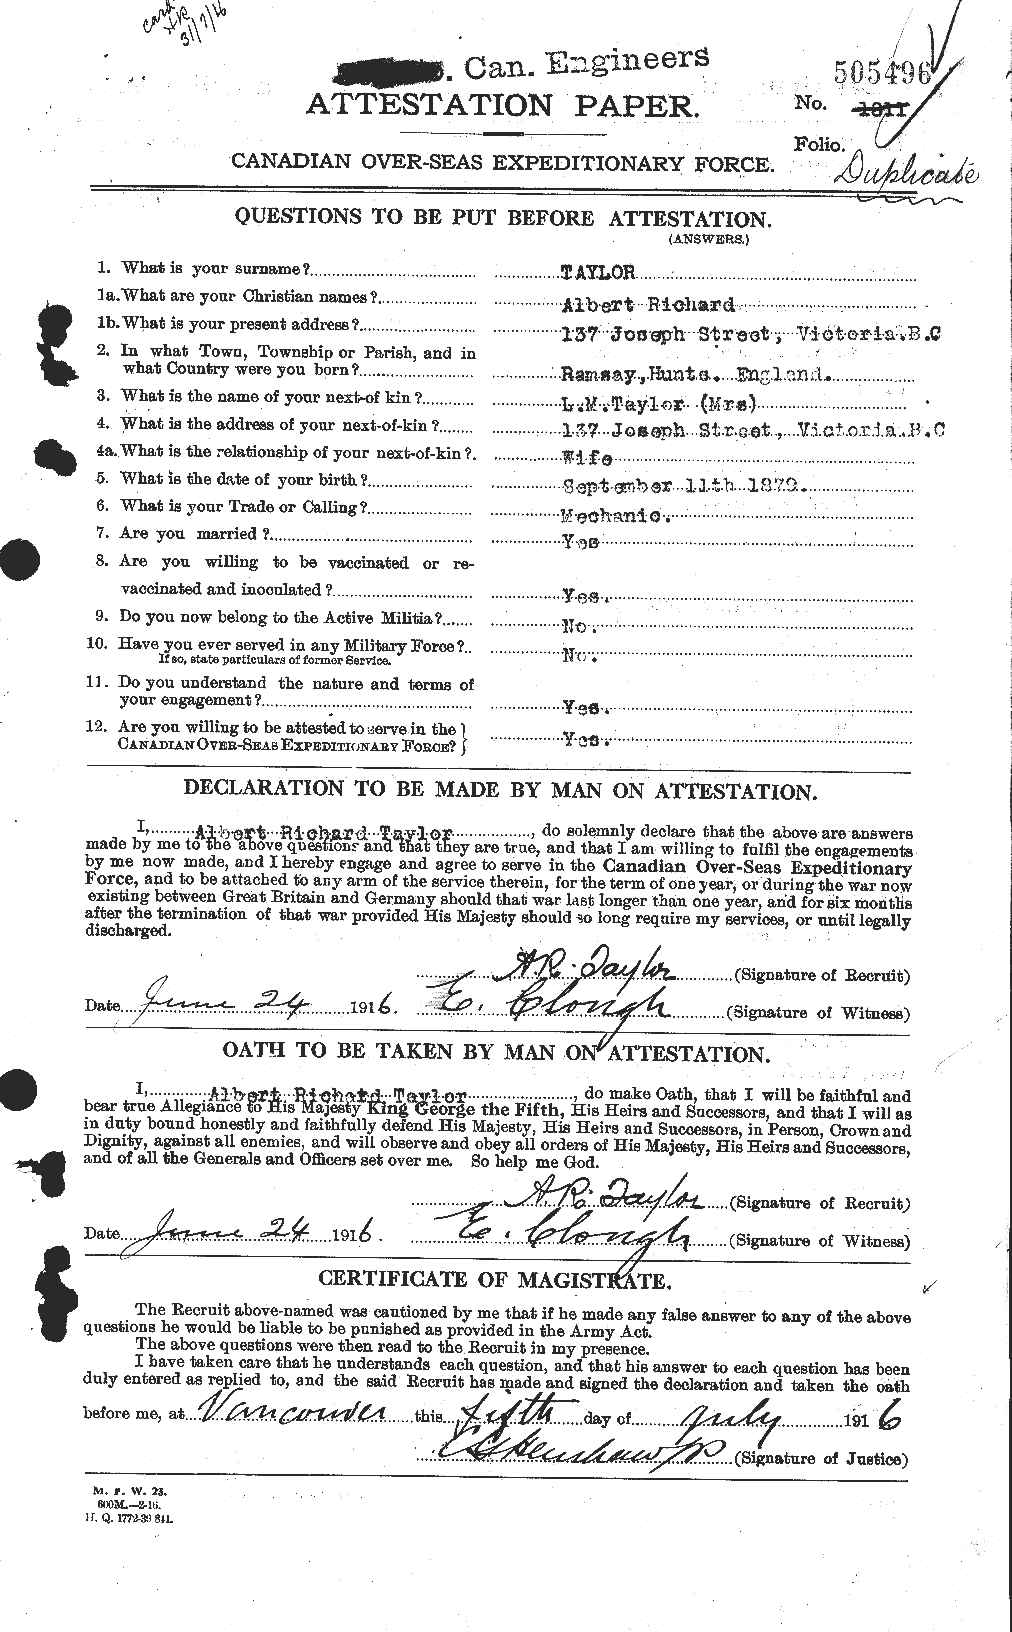 Dossiers du Personnel de la Première Guerre mondiale - CEC 626124a